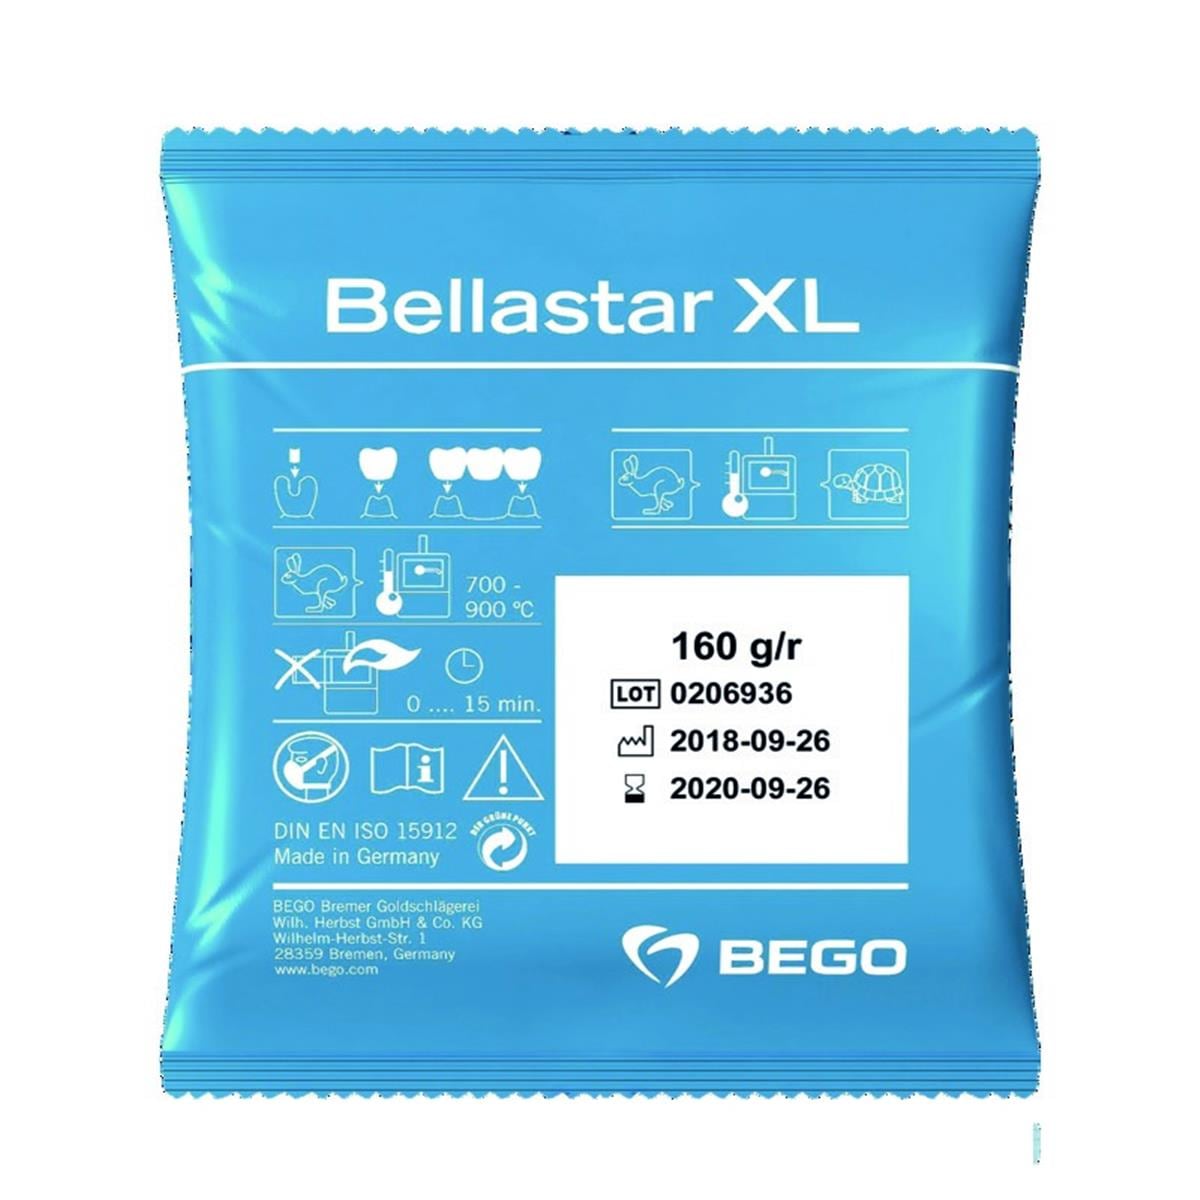 Bellastar XL BEGO - Le carton de 12,8 kg (80 x 160 g)